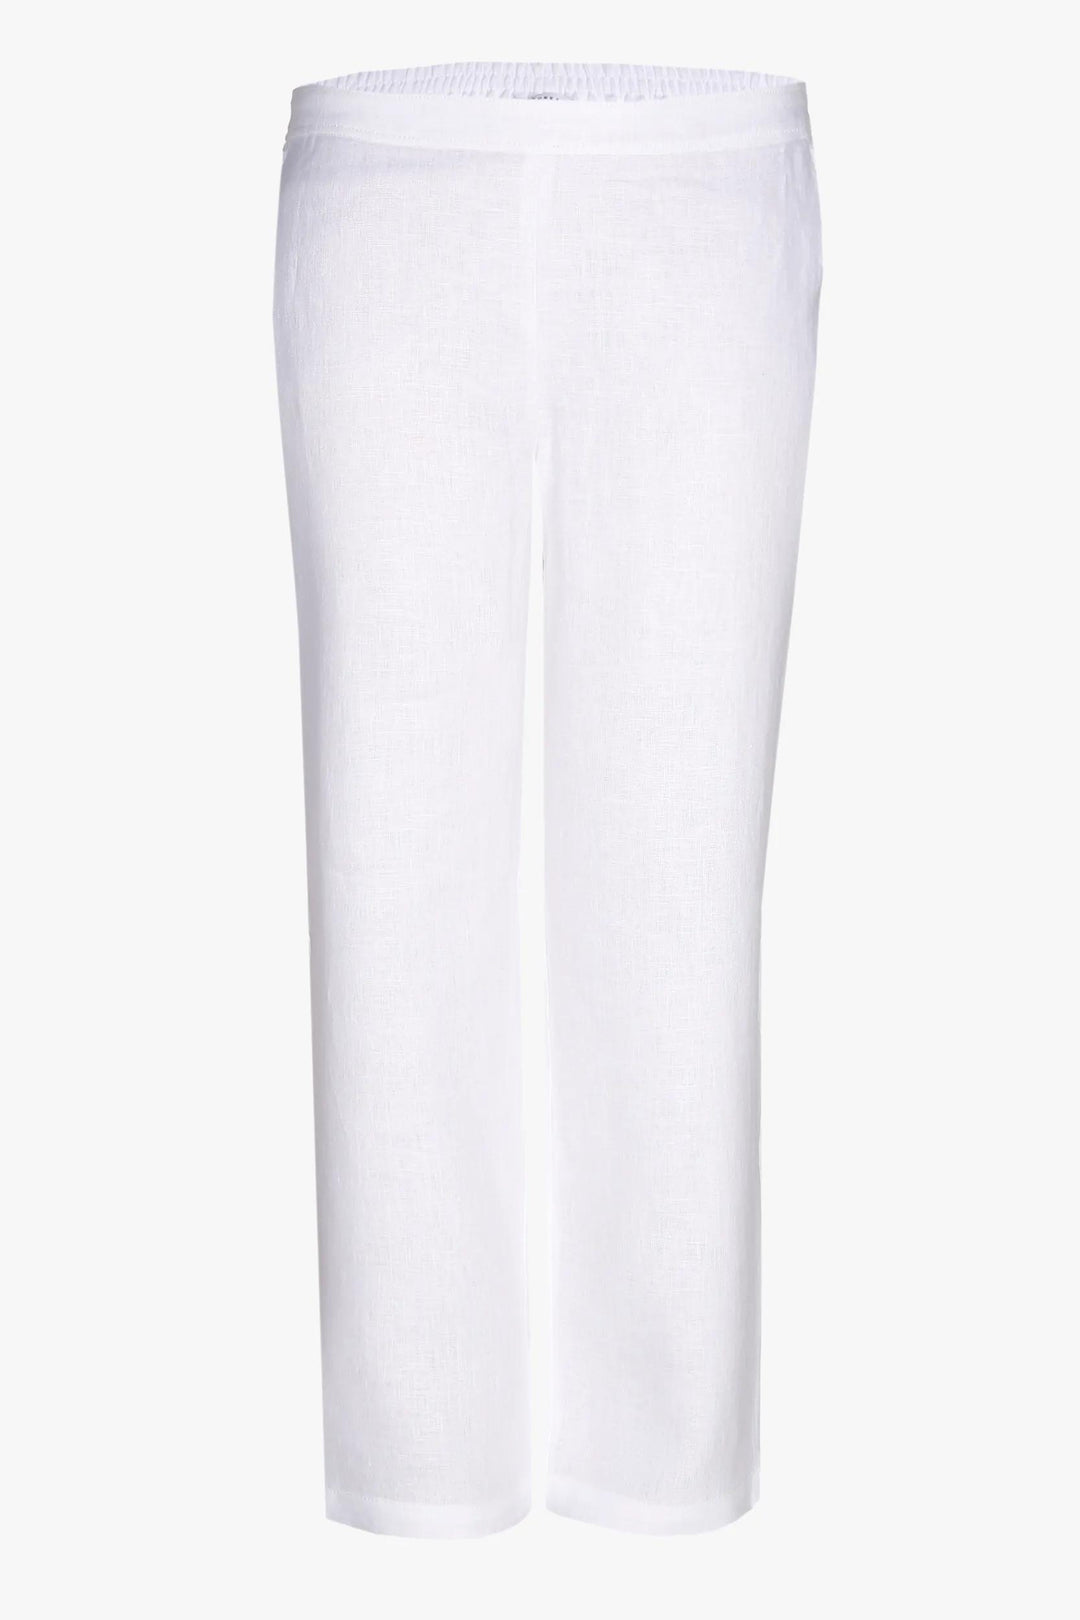 witte linnen broek